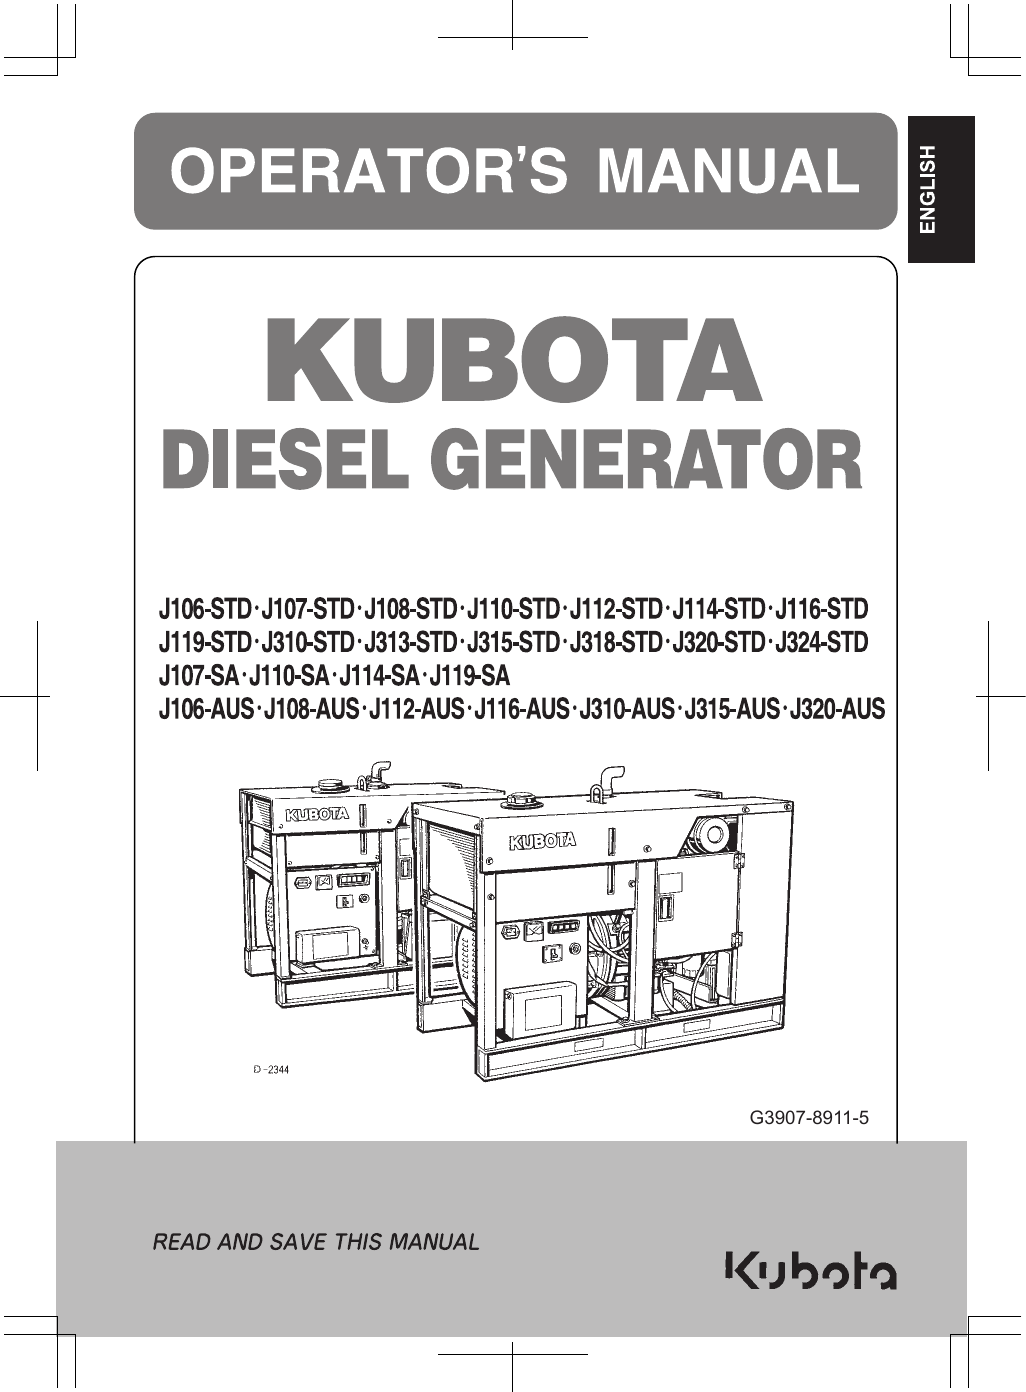 Kubota v1305 bg manual pdf